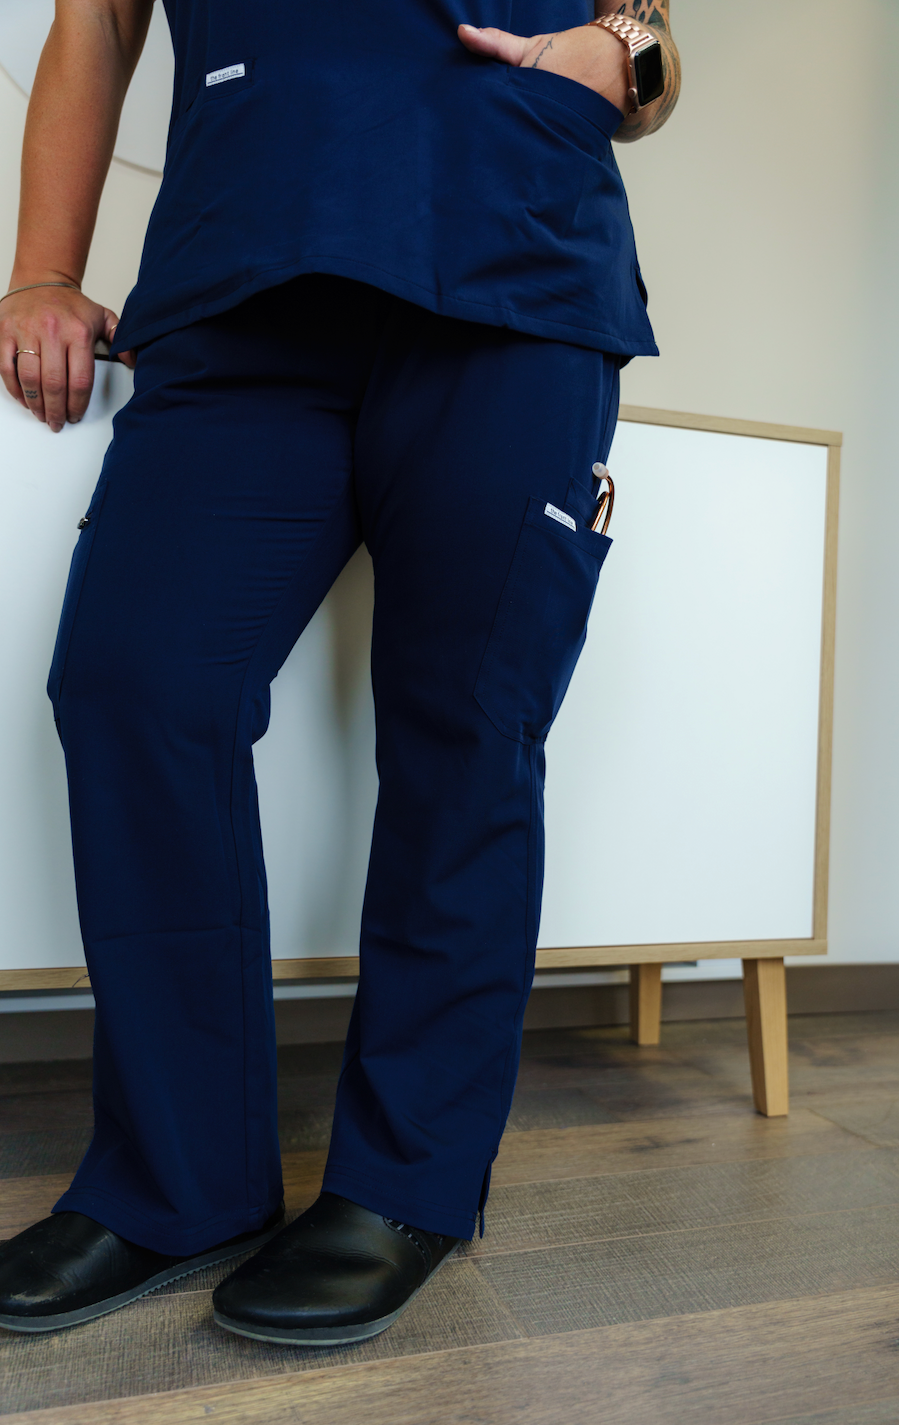 Lauren Conrad Jeans Womens Size 12 Color Blue Straight Leg Mid Rise Pants  NWOT